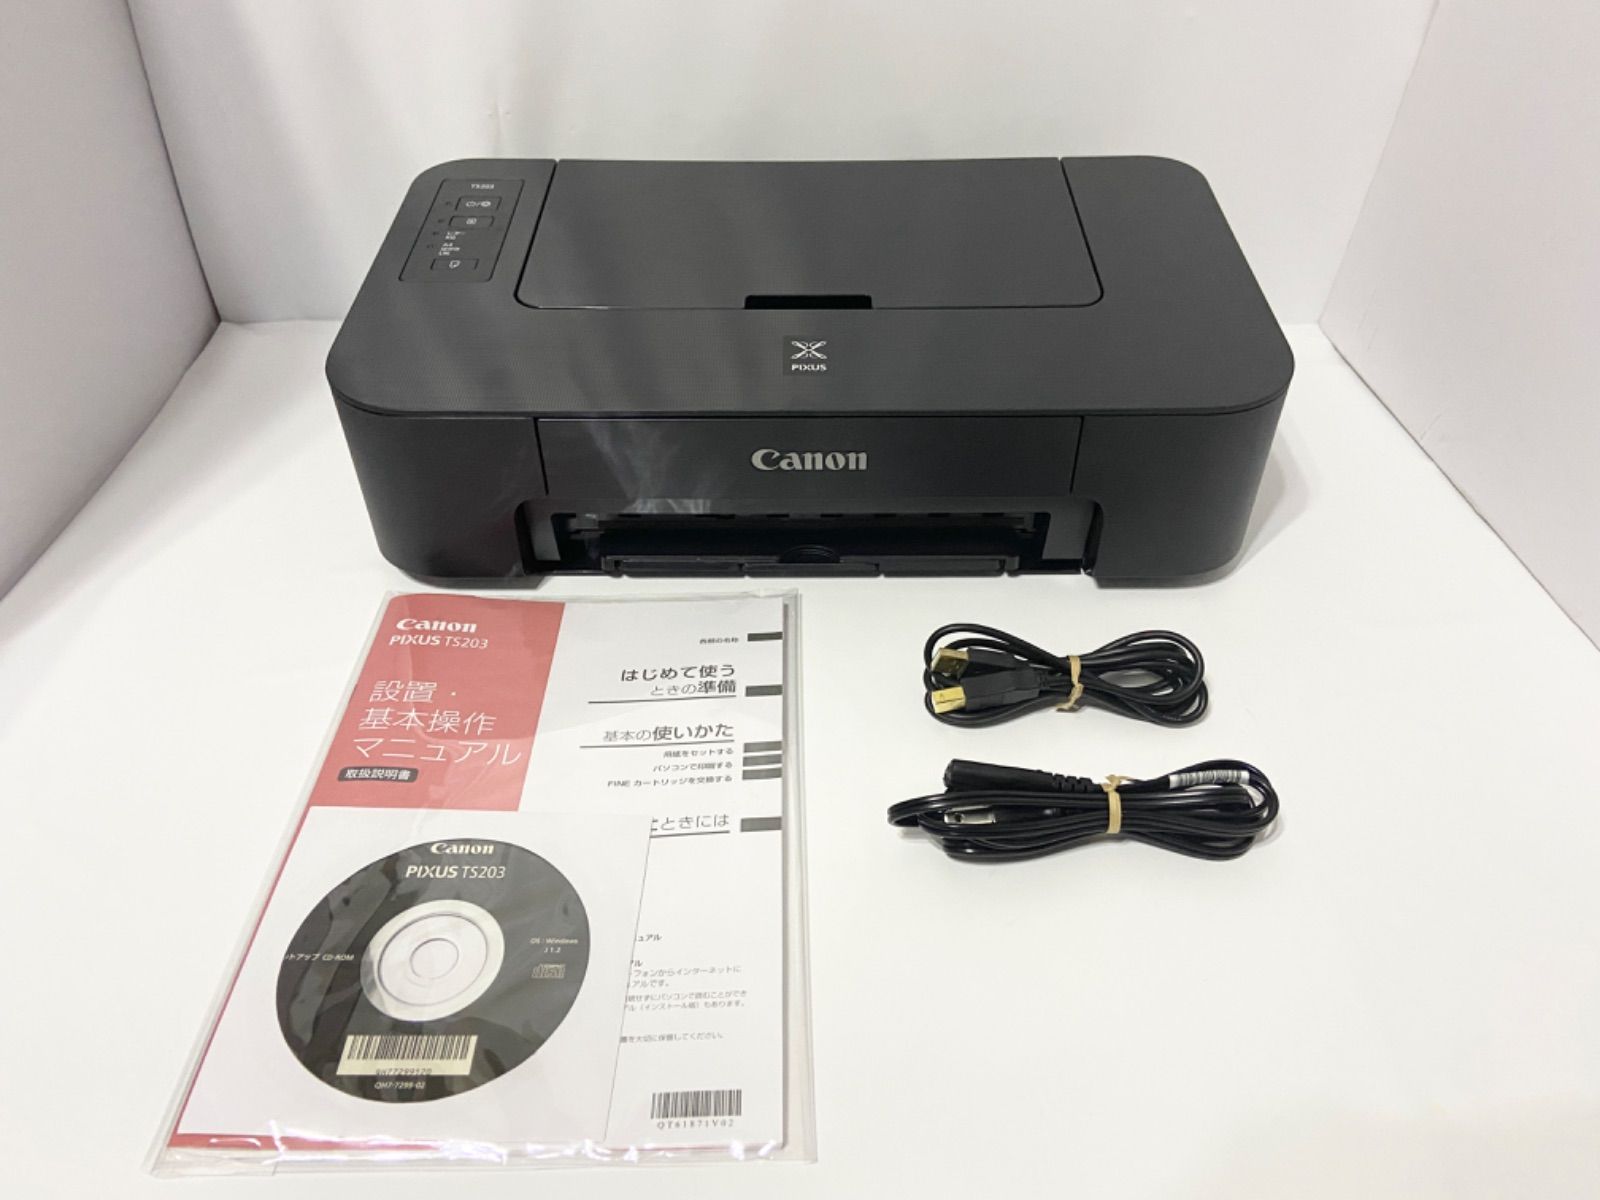 Canon プリンター PIXUS TS203